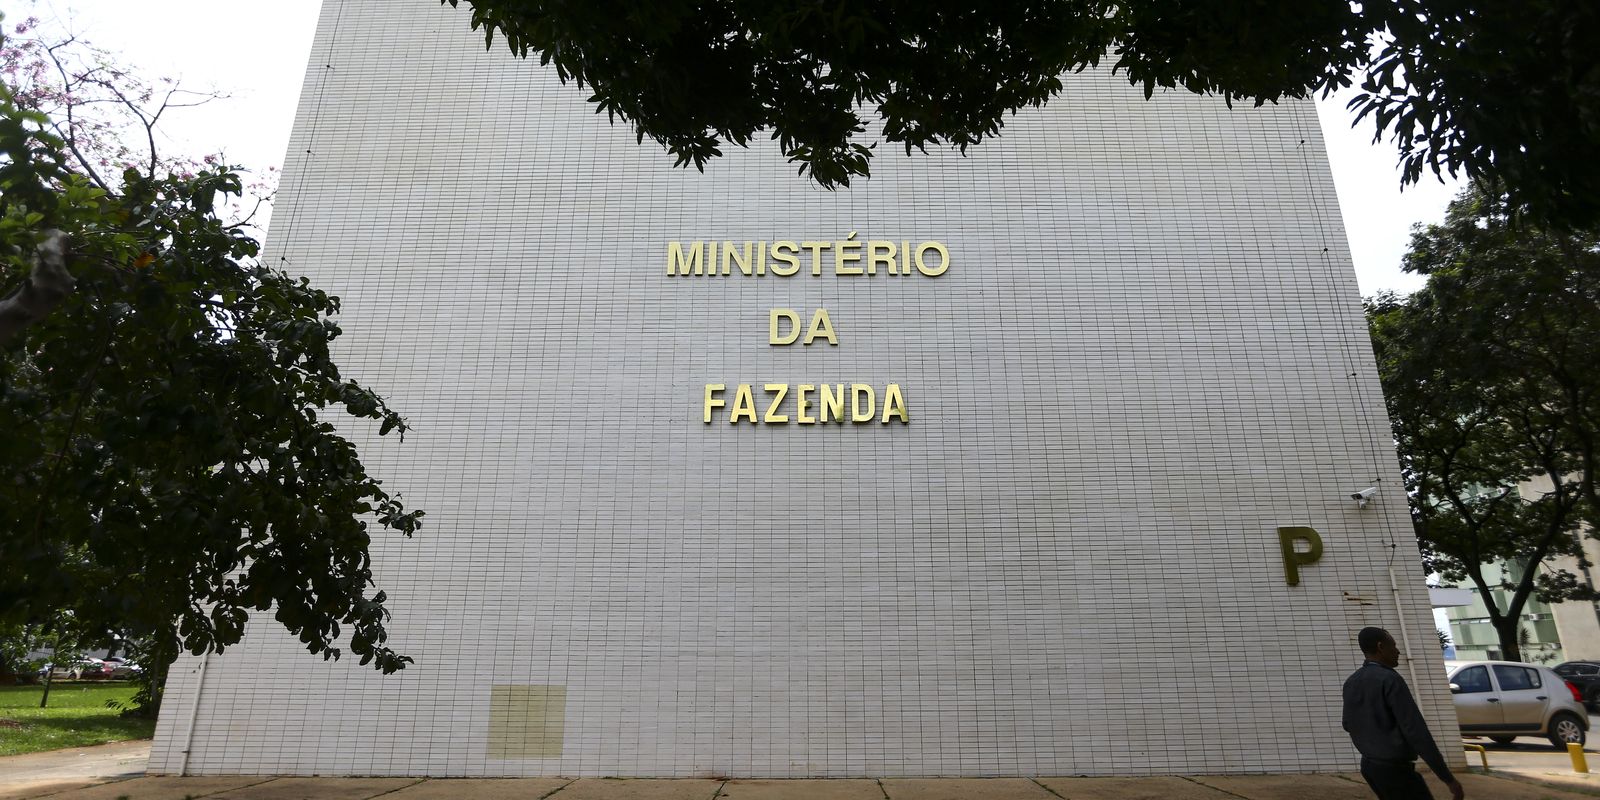 Prazo de adesão ao desenrola Brasil não é prorrogado, informa Fazenda